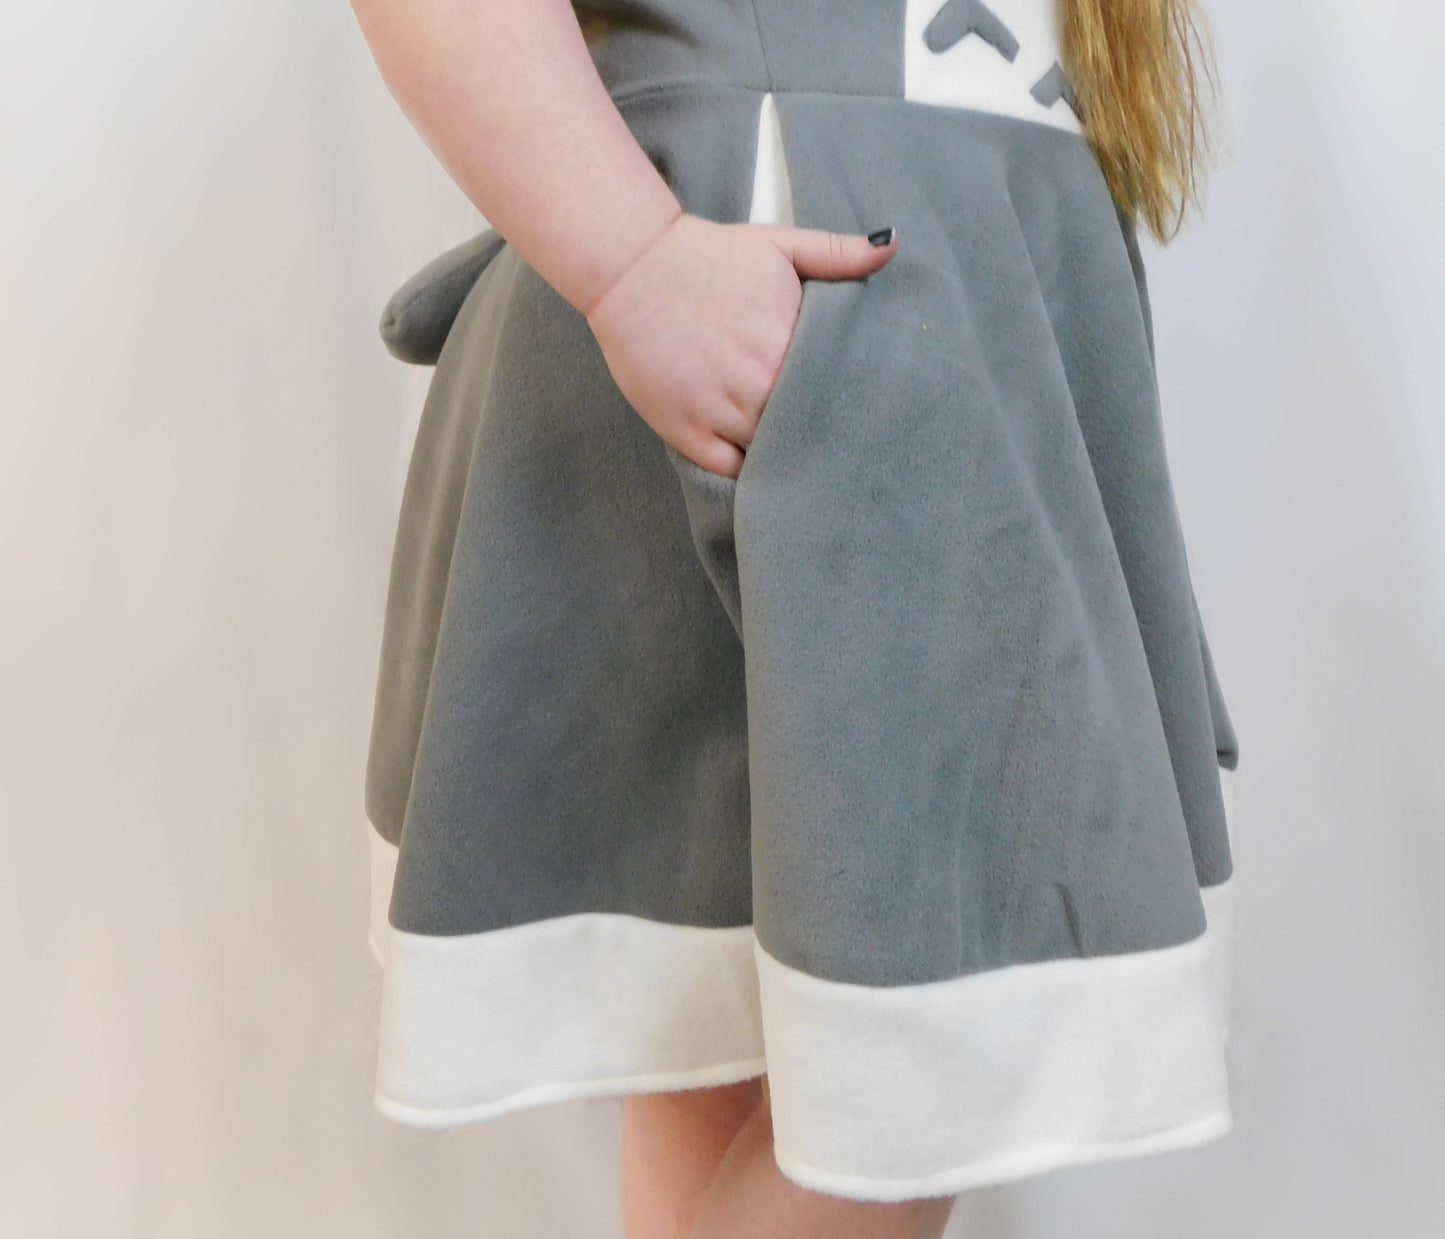 Totoro Inspired Kigurumi Dress